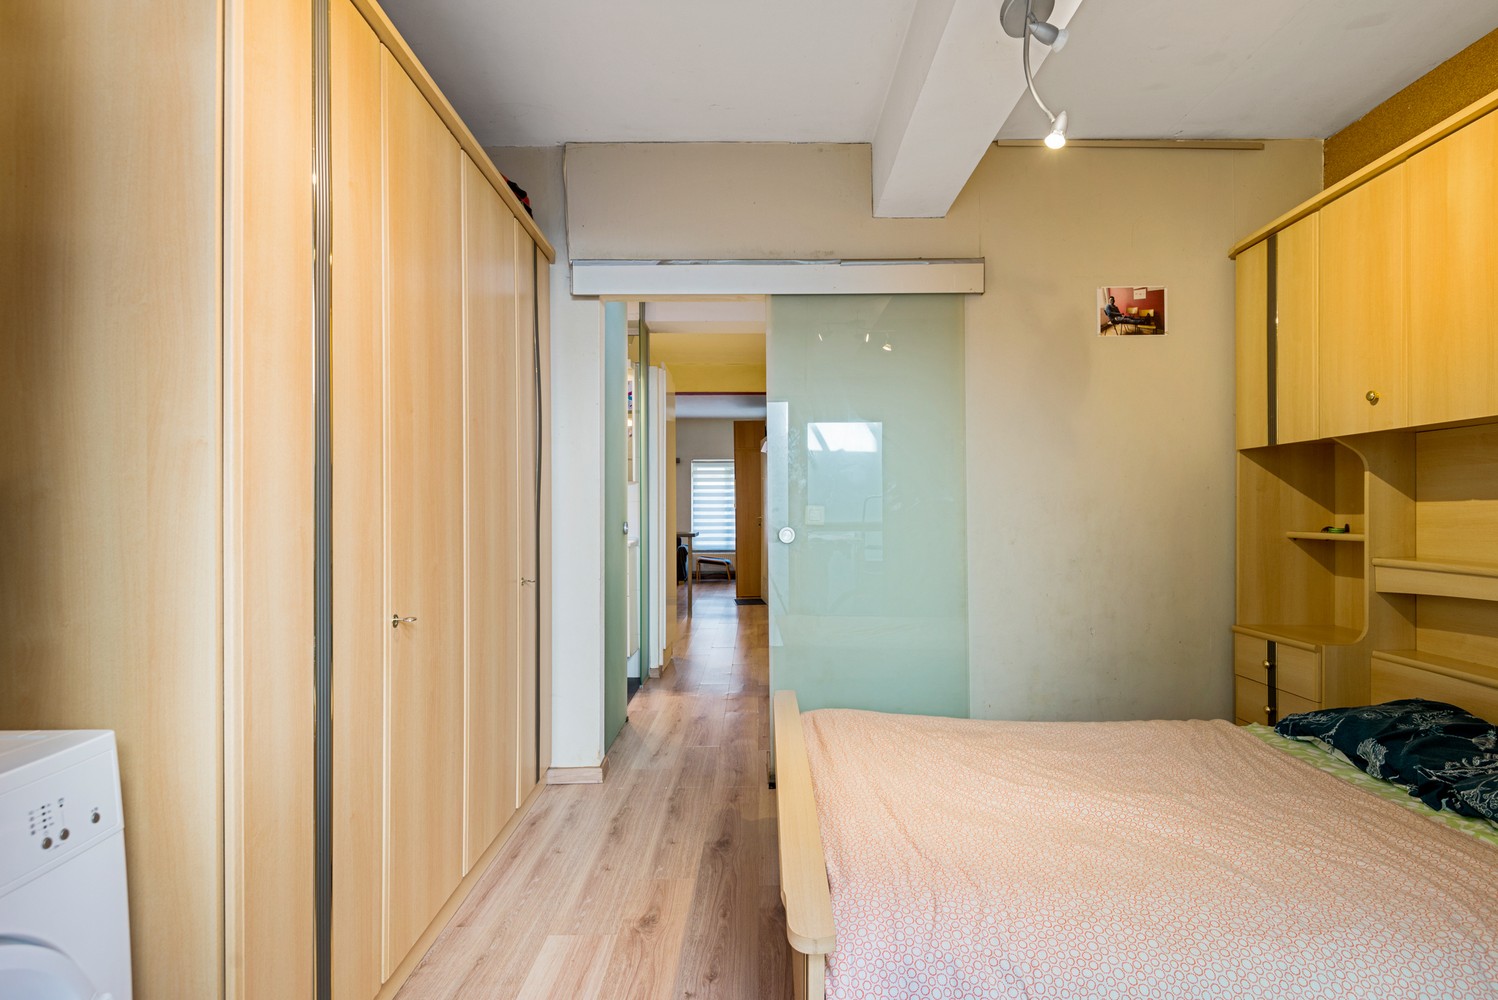 Gelijkvloers appartement met 1 slaapkamer te koop in Mechelen afbeelding 10